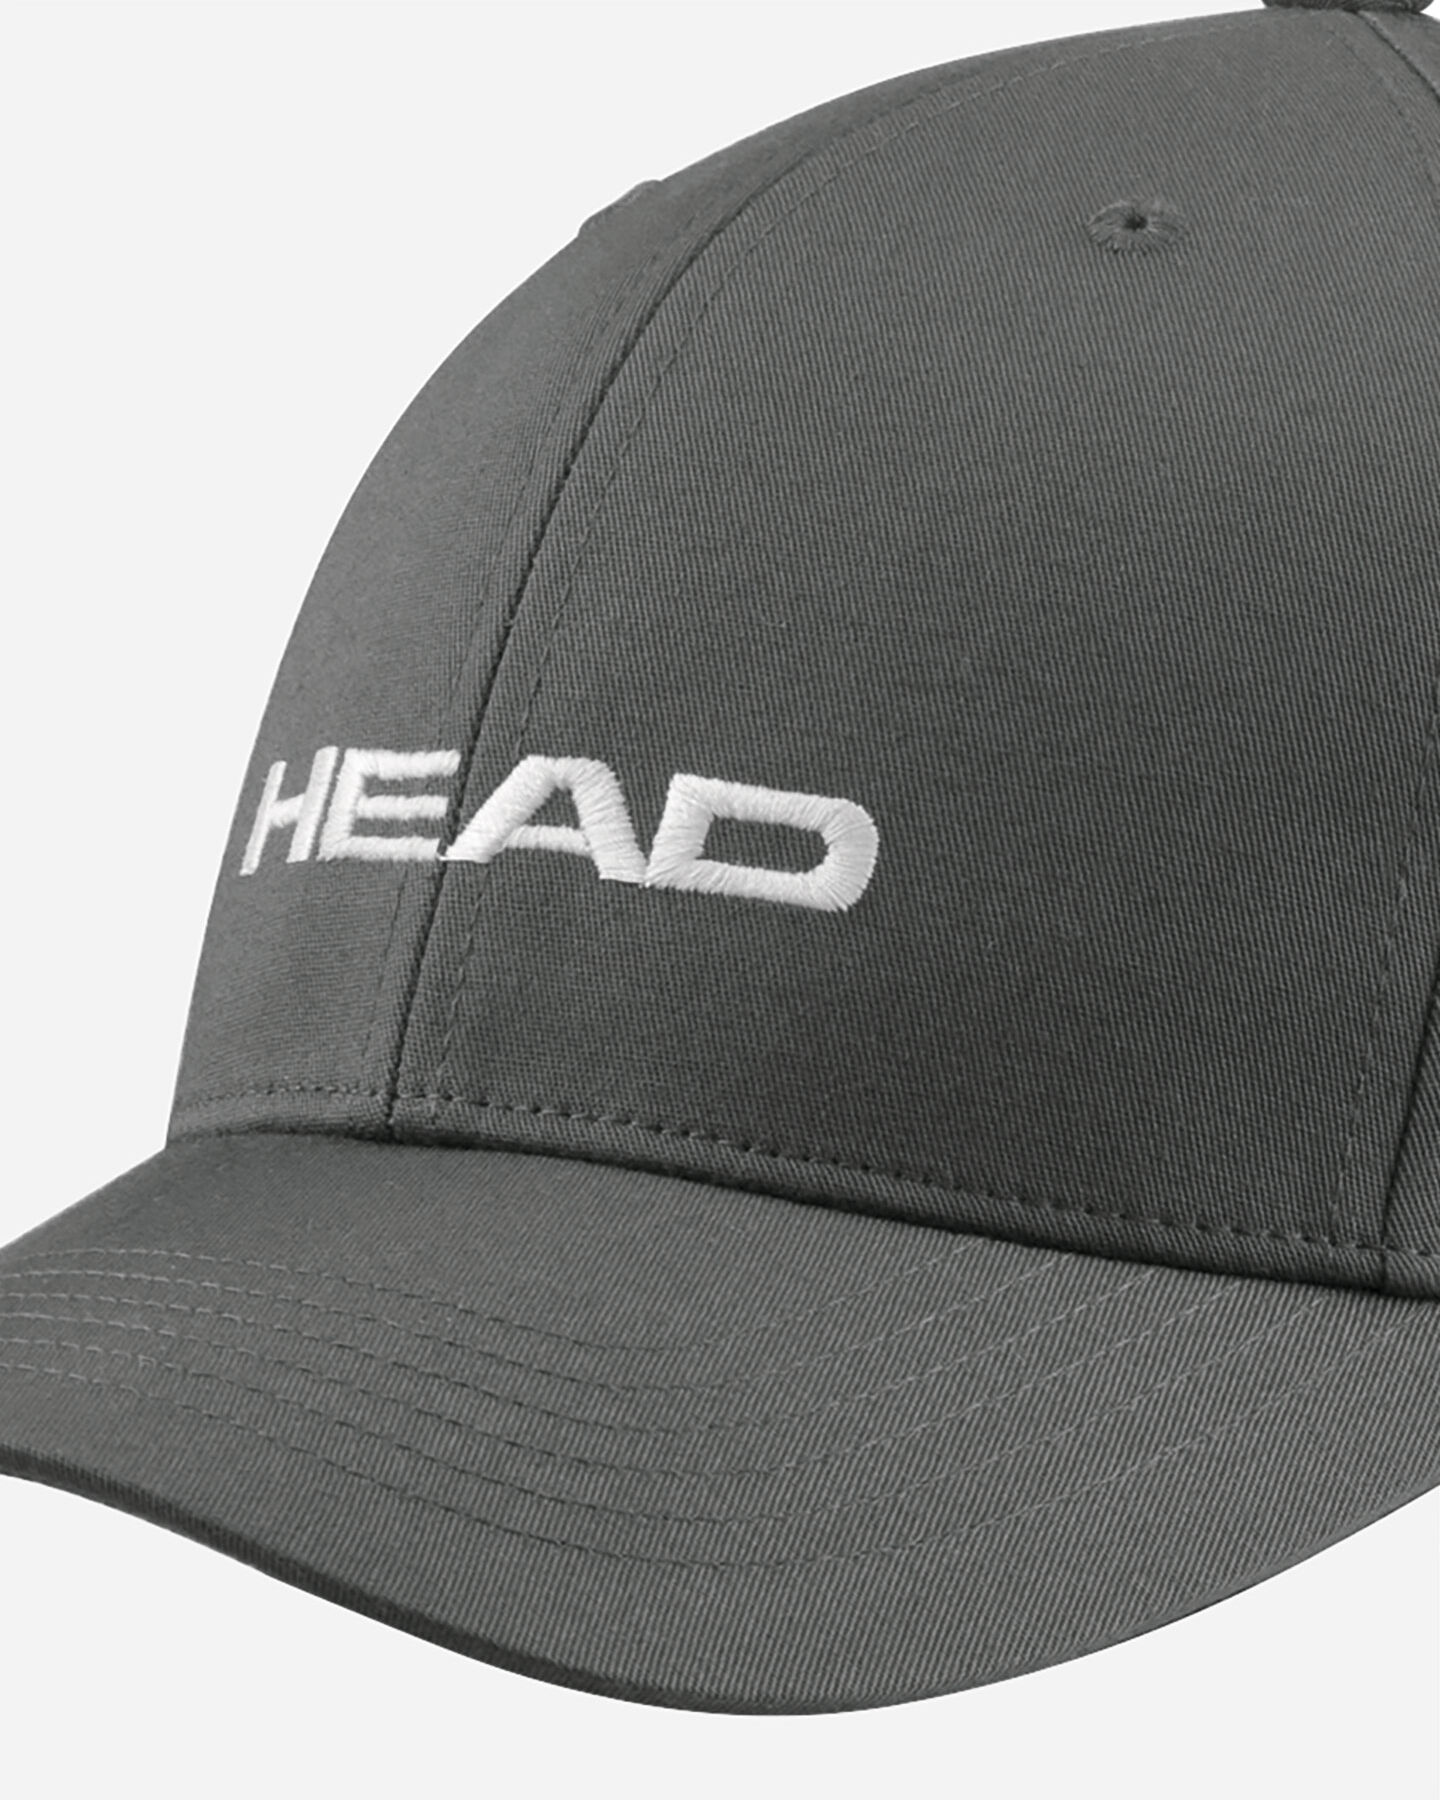  Cappellino HEAD PROMOTION S5221164 scatto 1